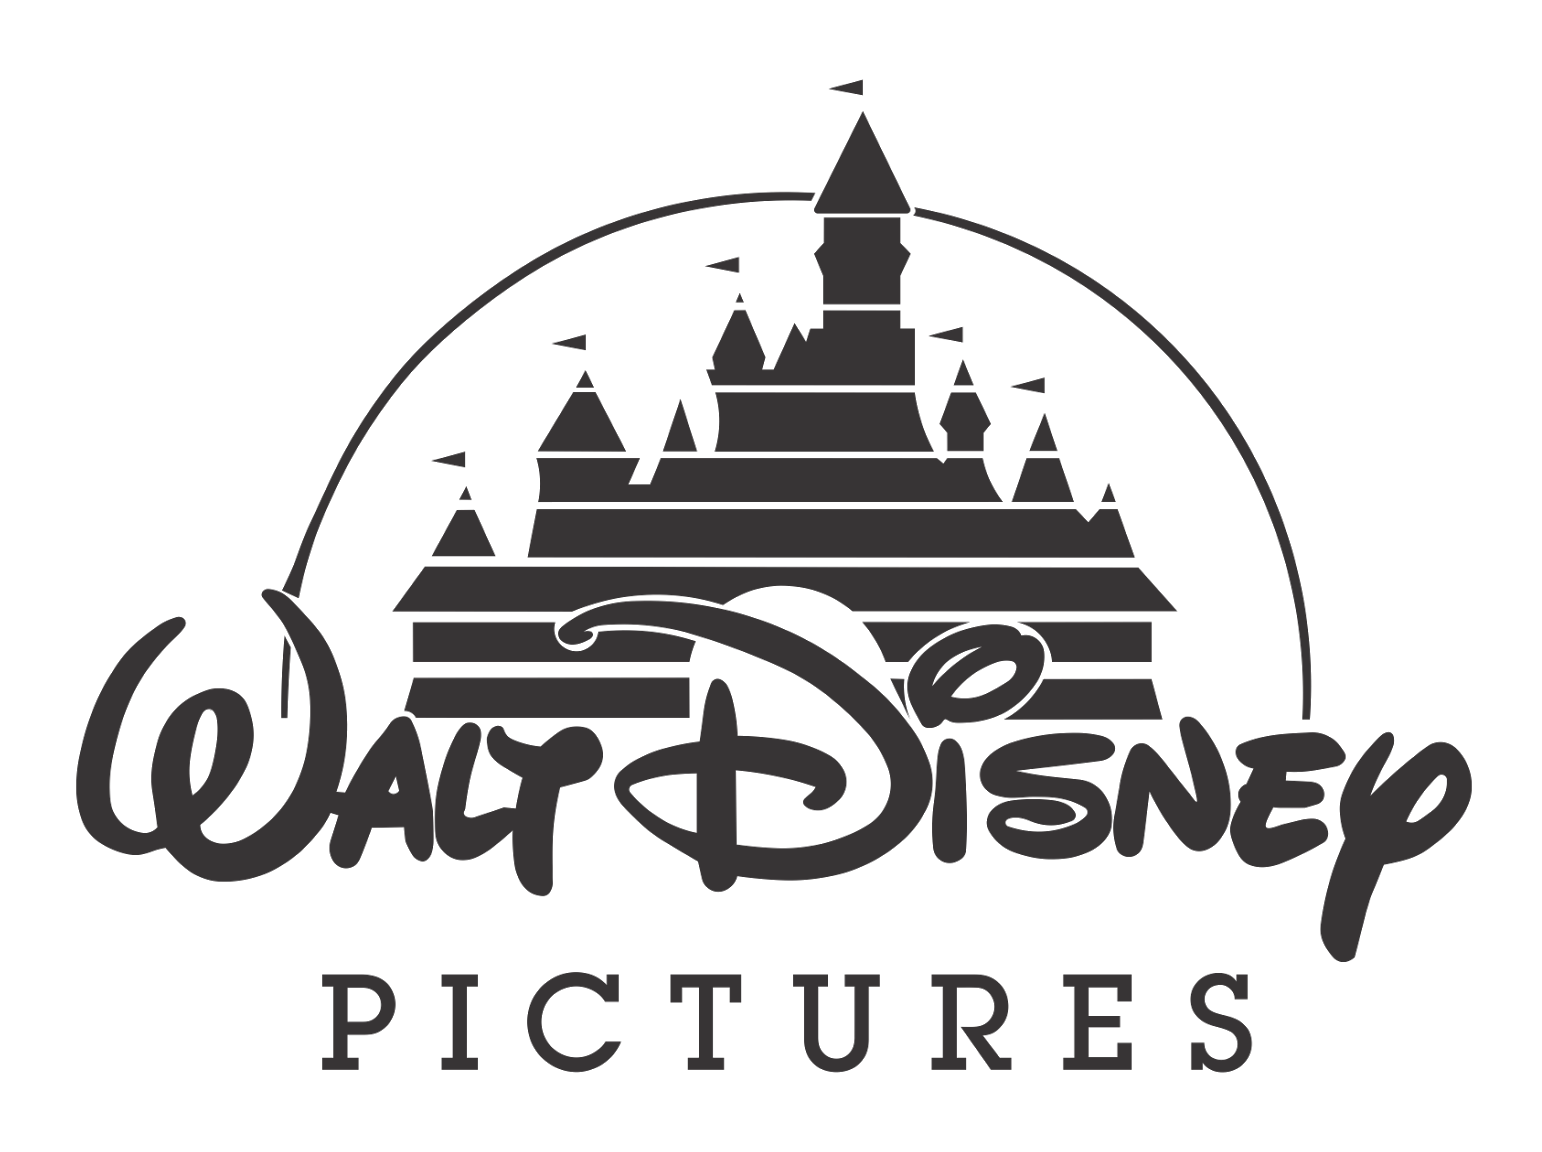 Walt Disney Pictures Logo PNG Image - PurePNG | Free ...